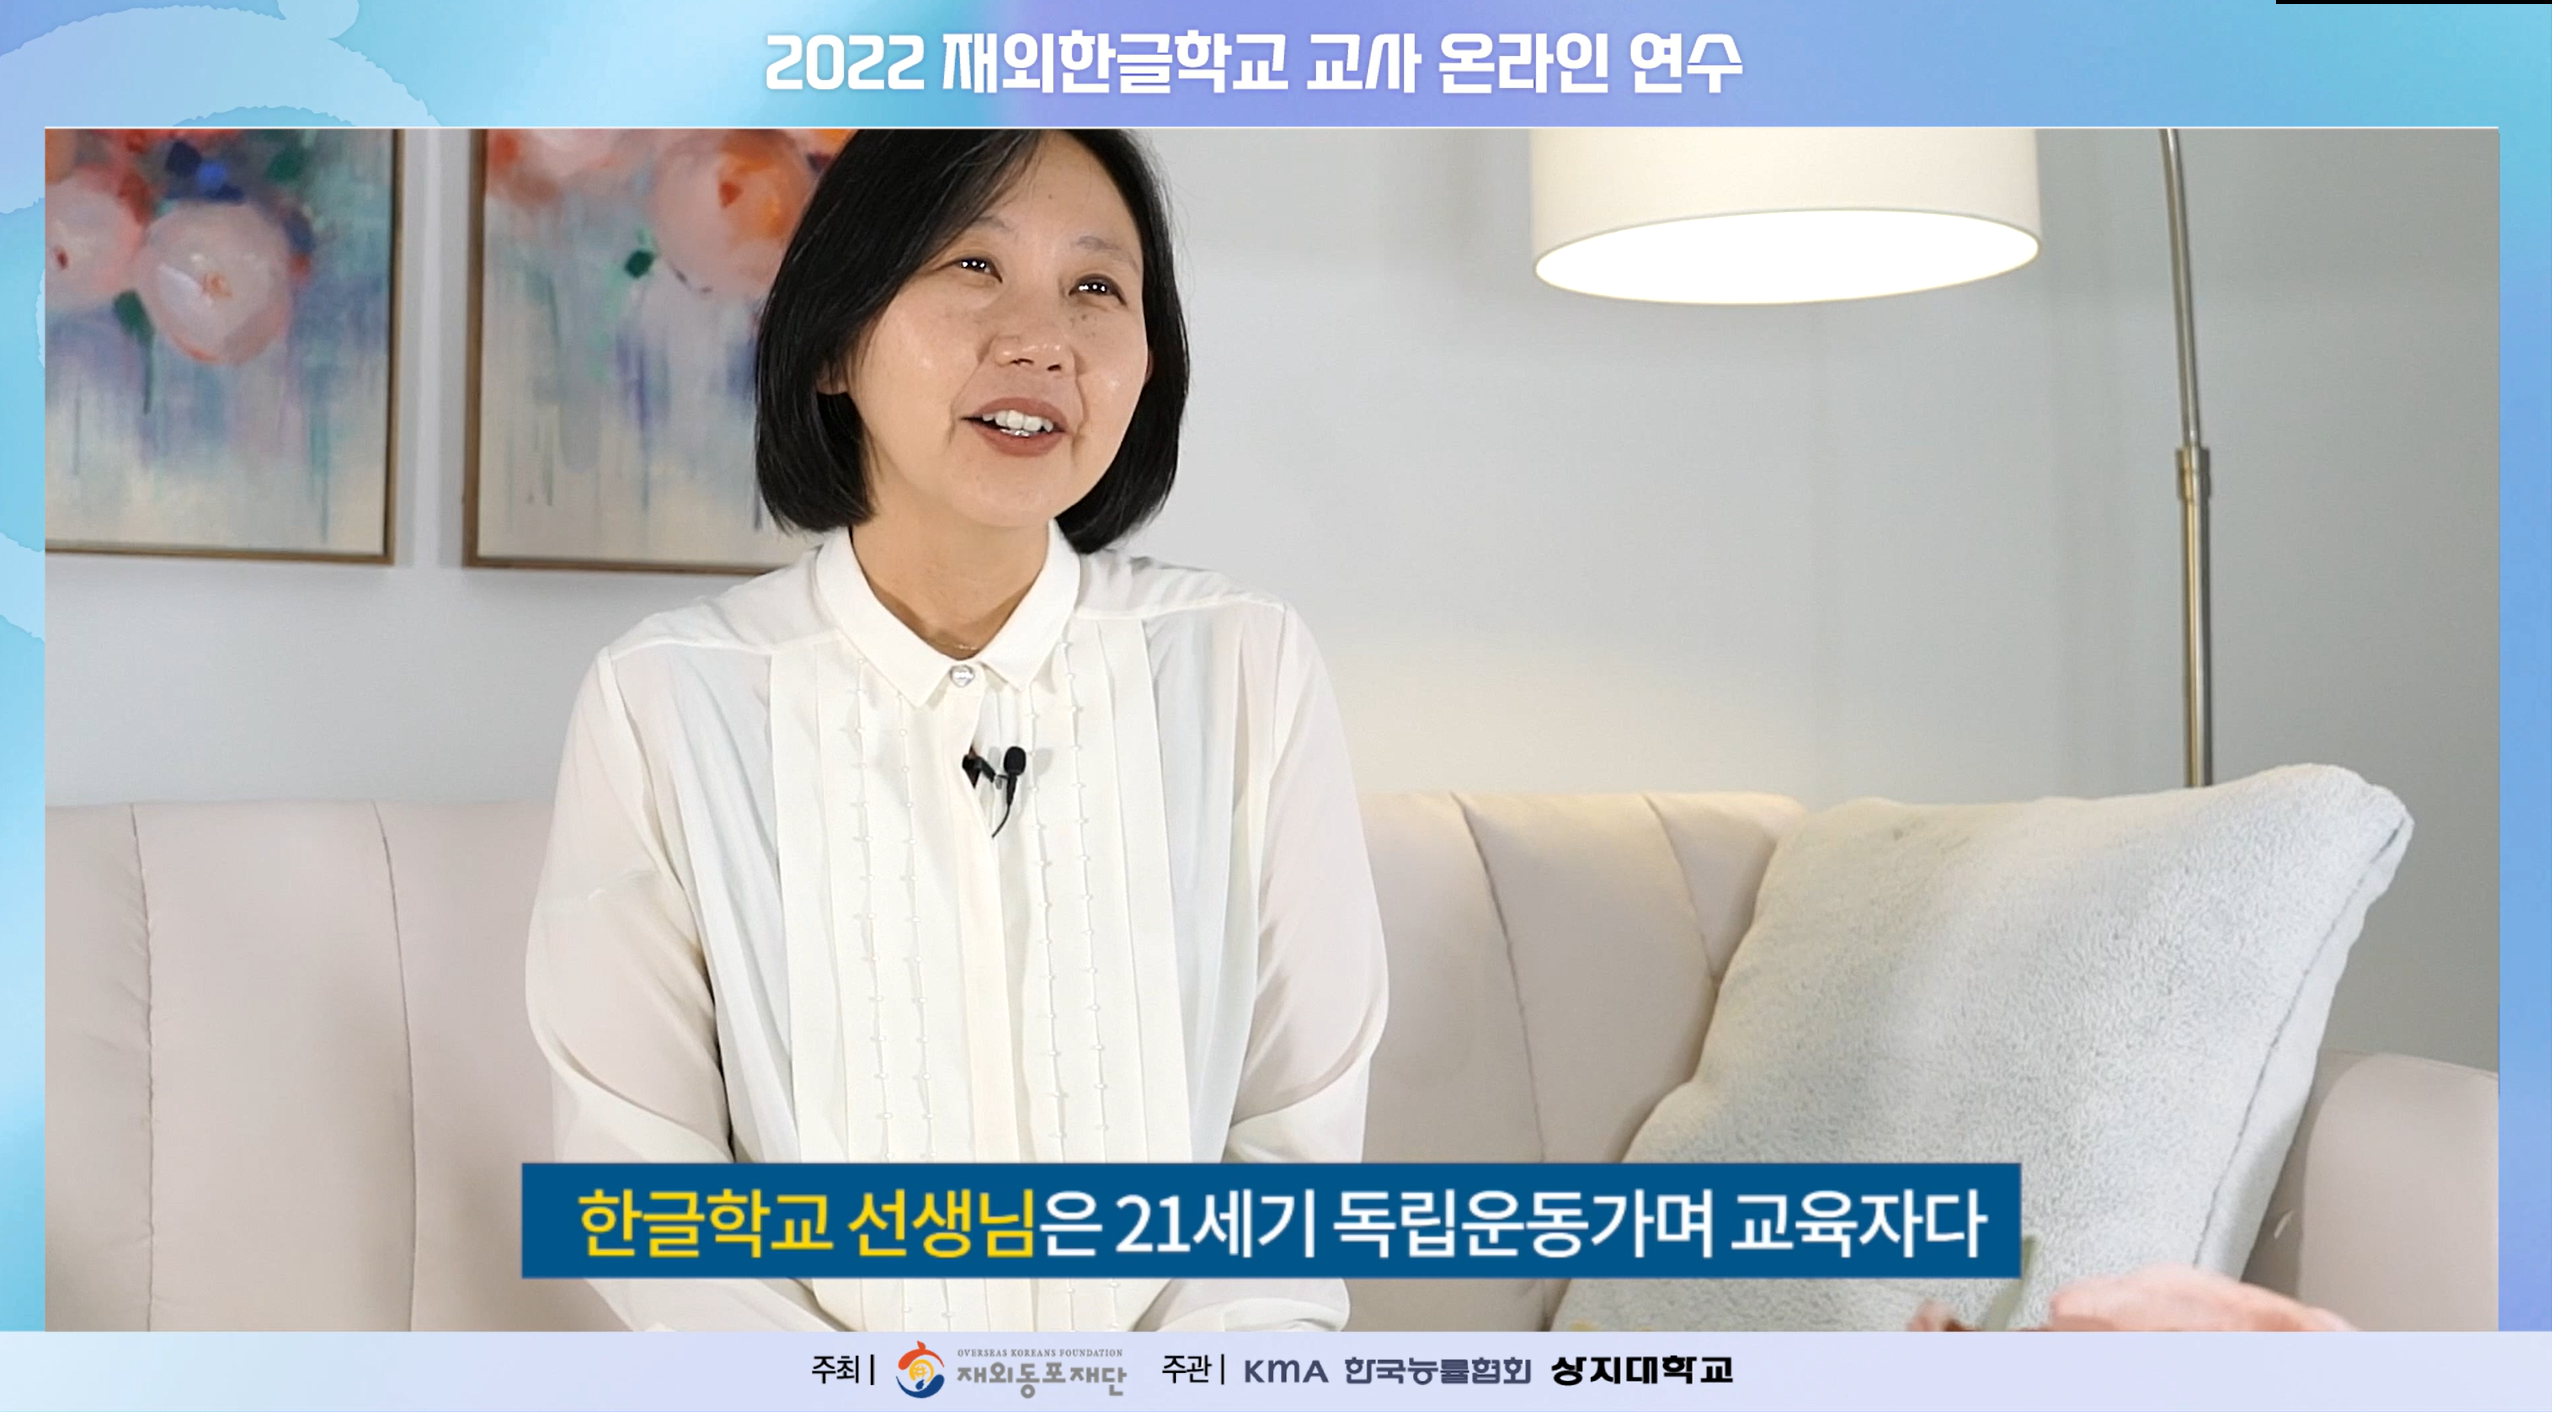 한글학교 교사를 위한 온라인 연수 개회식 중 김현주 선생님의 기조강연